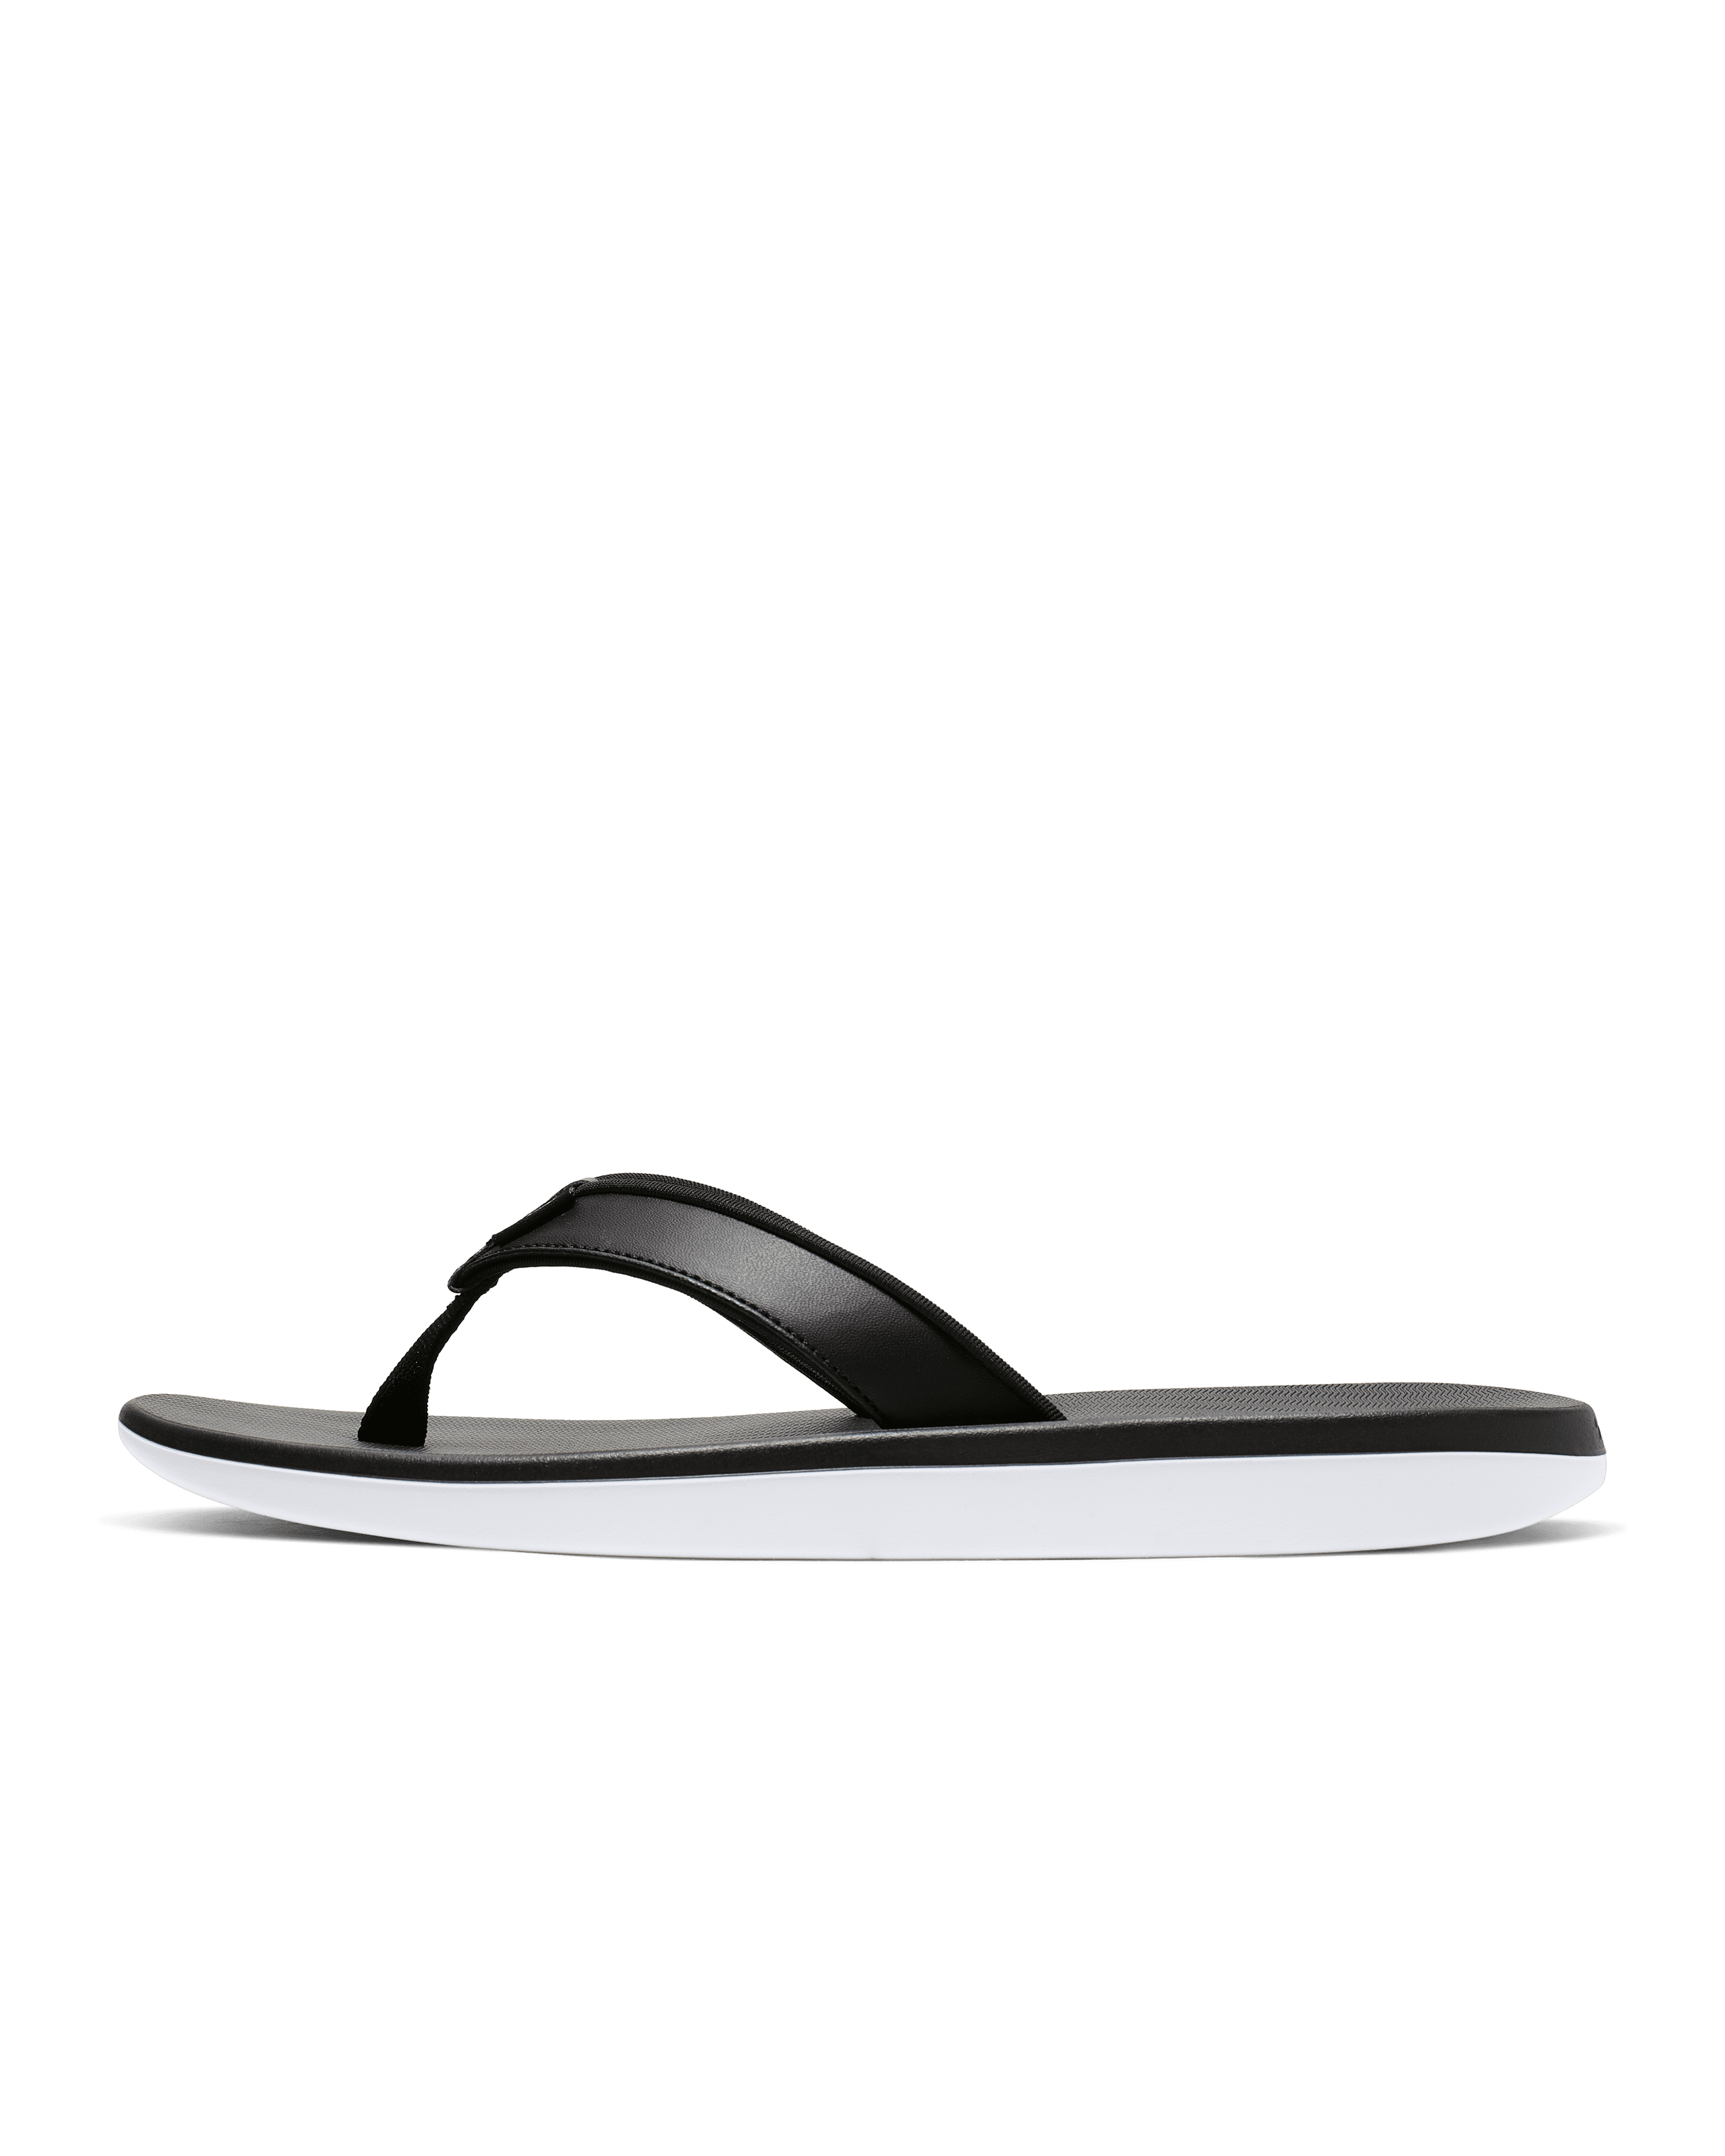 LXP FZD Unisex Beach Flip Flops Lightweight Summer Non-Slip Thongs Slippers Sandals